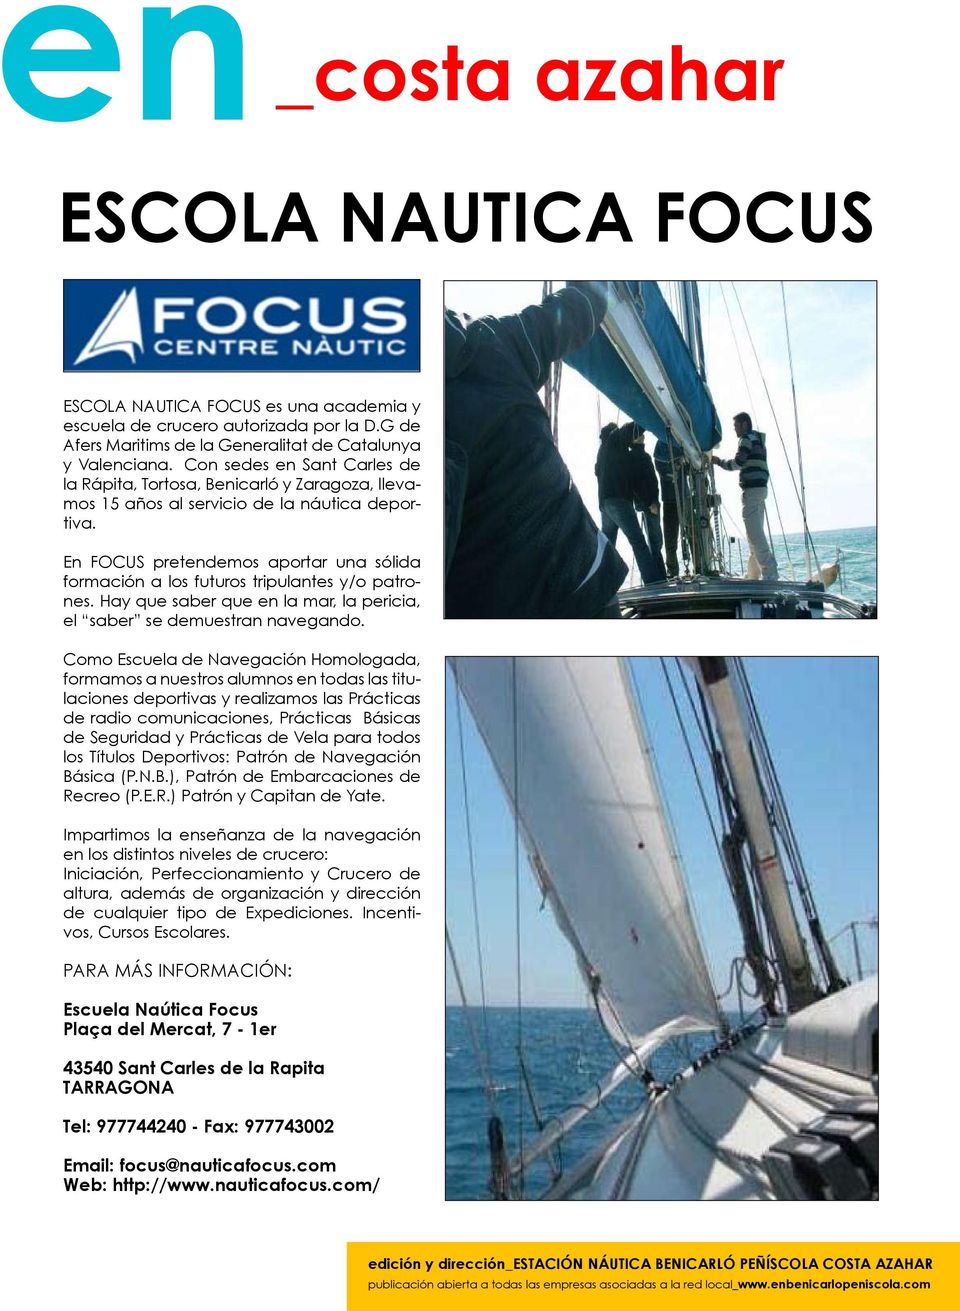 En FOCUS pretendemos aportar una sólida formación a los futuros tripulantes y/o patrones. Hay que saber que en la mar, la pericia, el saber se demuestran navegando.